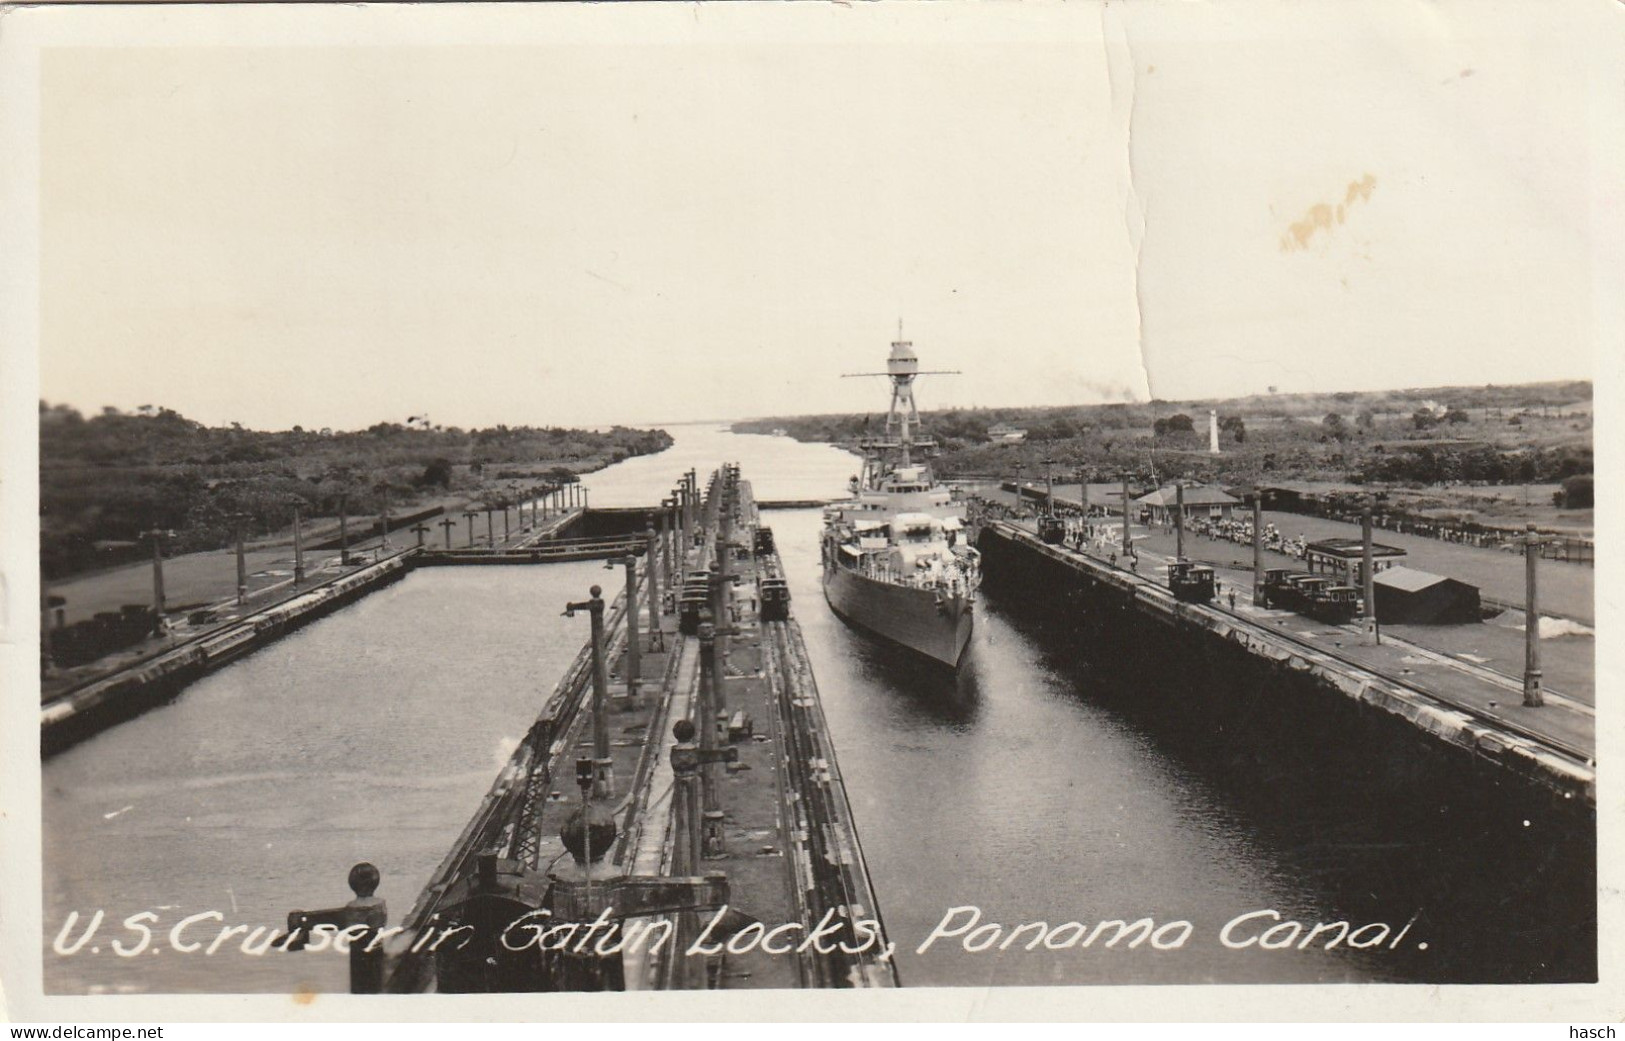 1825 A 46 Gatun Locks, Panama Canal U.S Cruiser - Panama